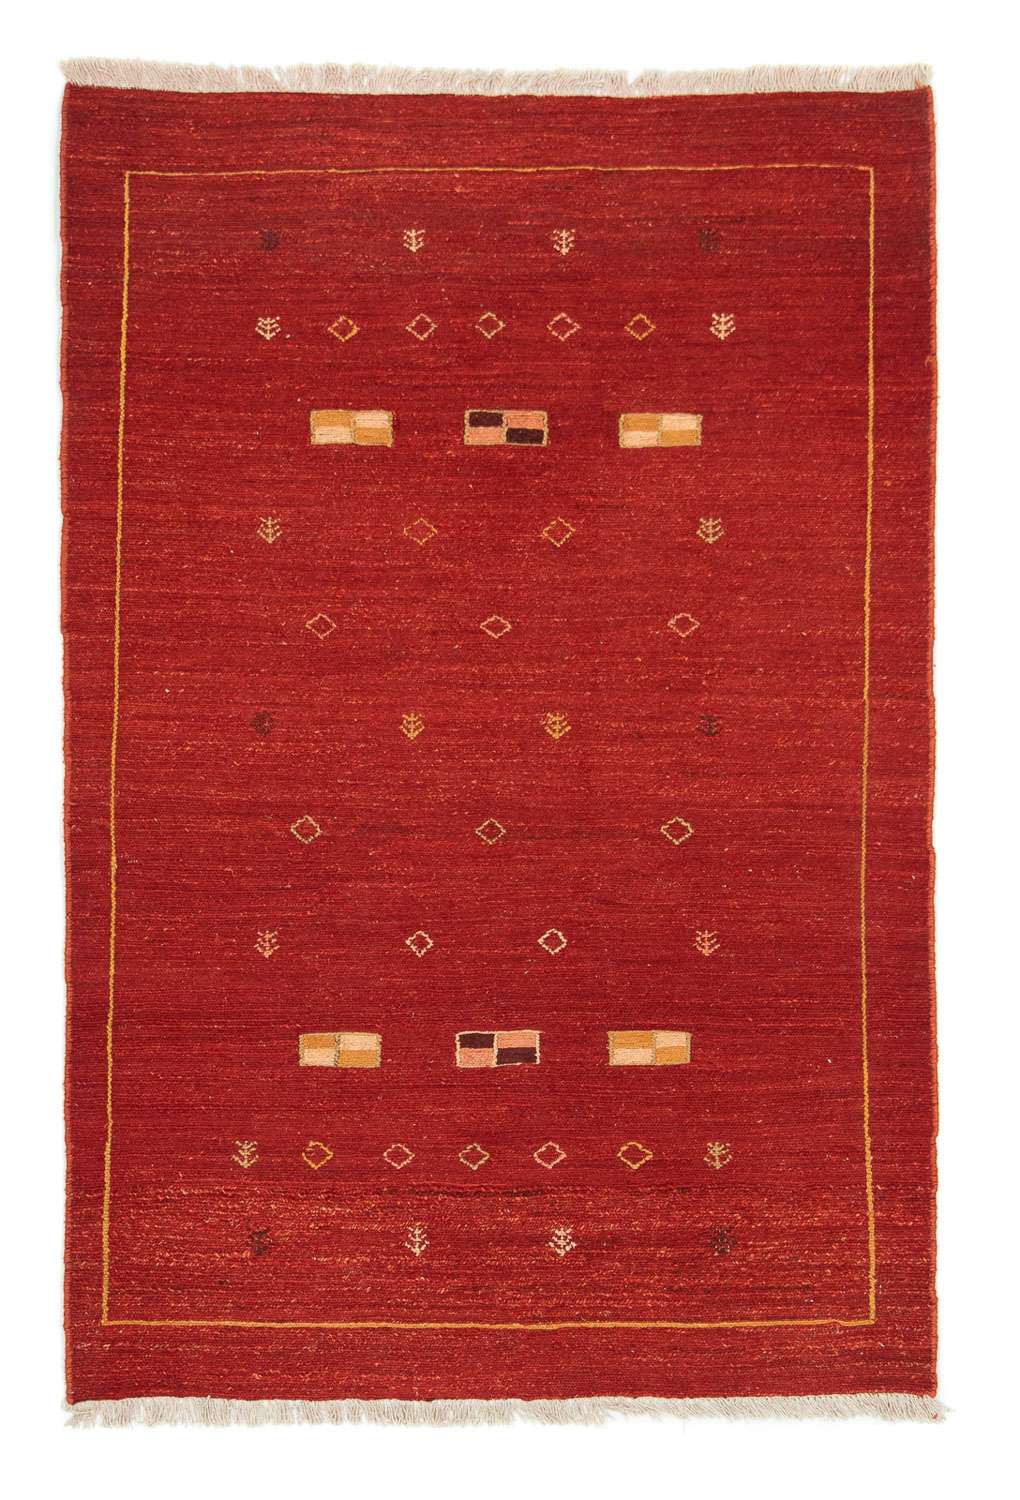 Gabbeh tapijt - Perzisch - 180 x 113 cm - rood